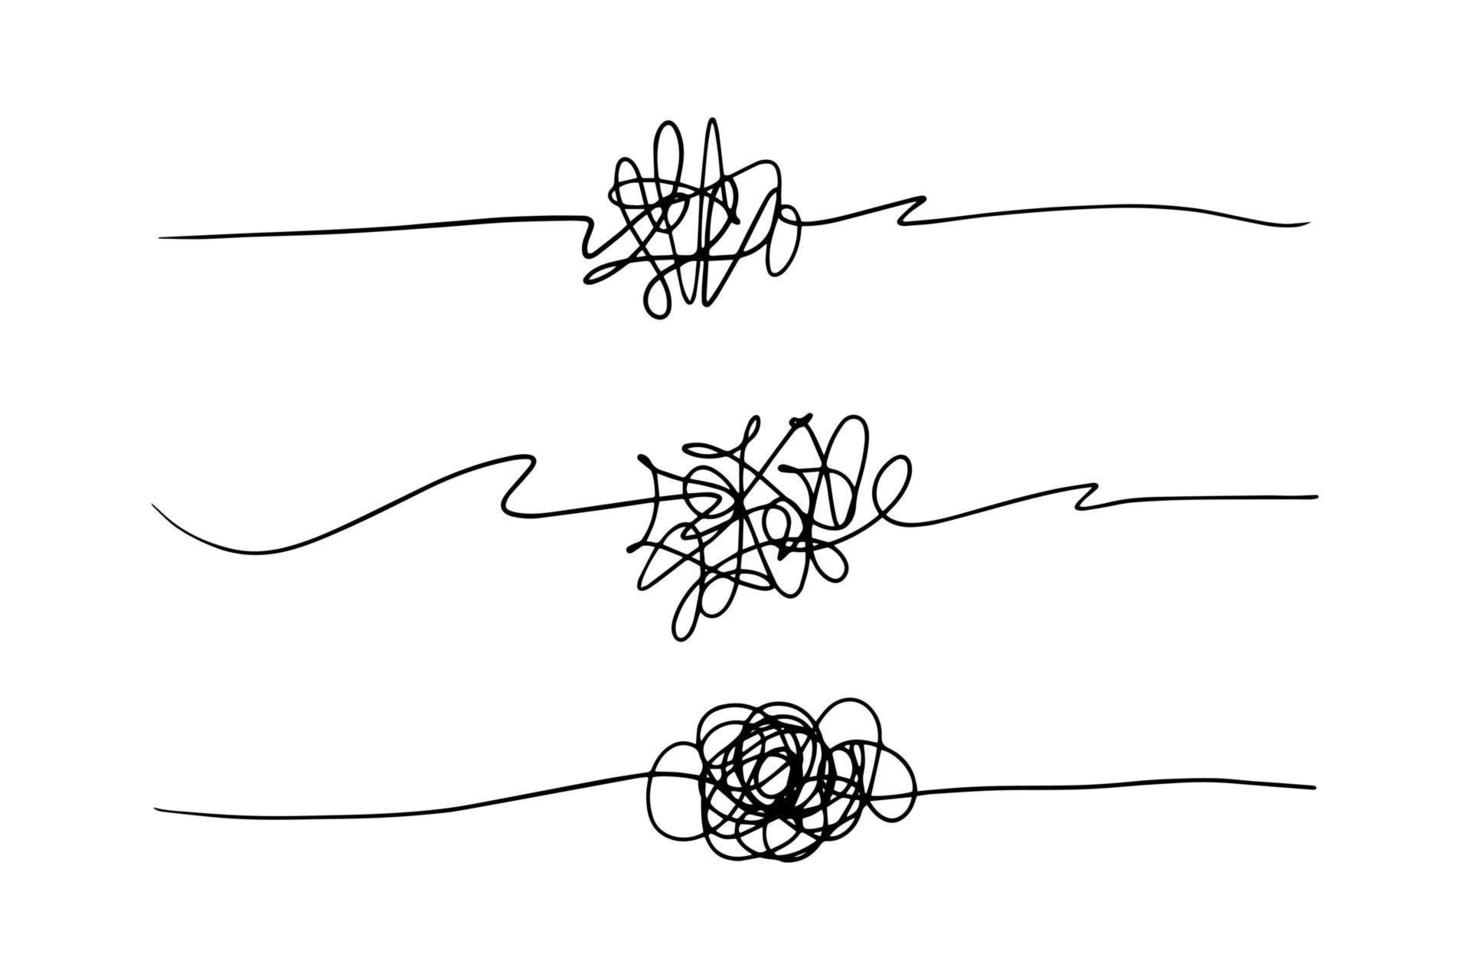 simbolo di complicato modo con Scribbled il giro elemento, vettore illustrazione.